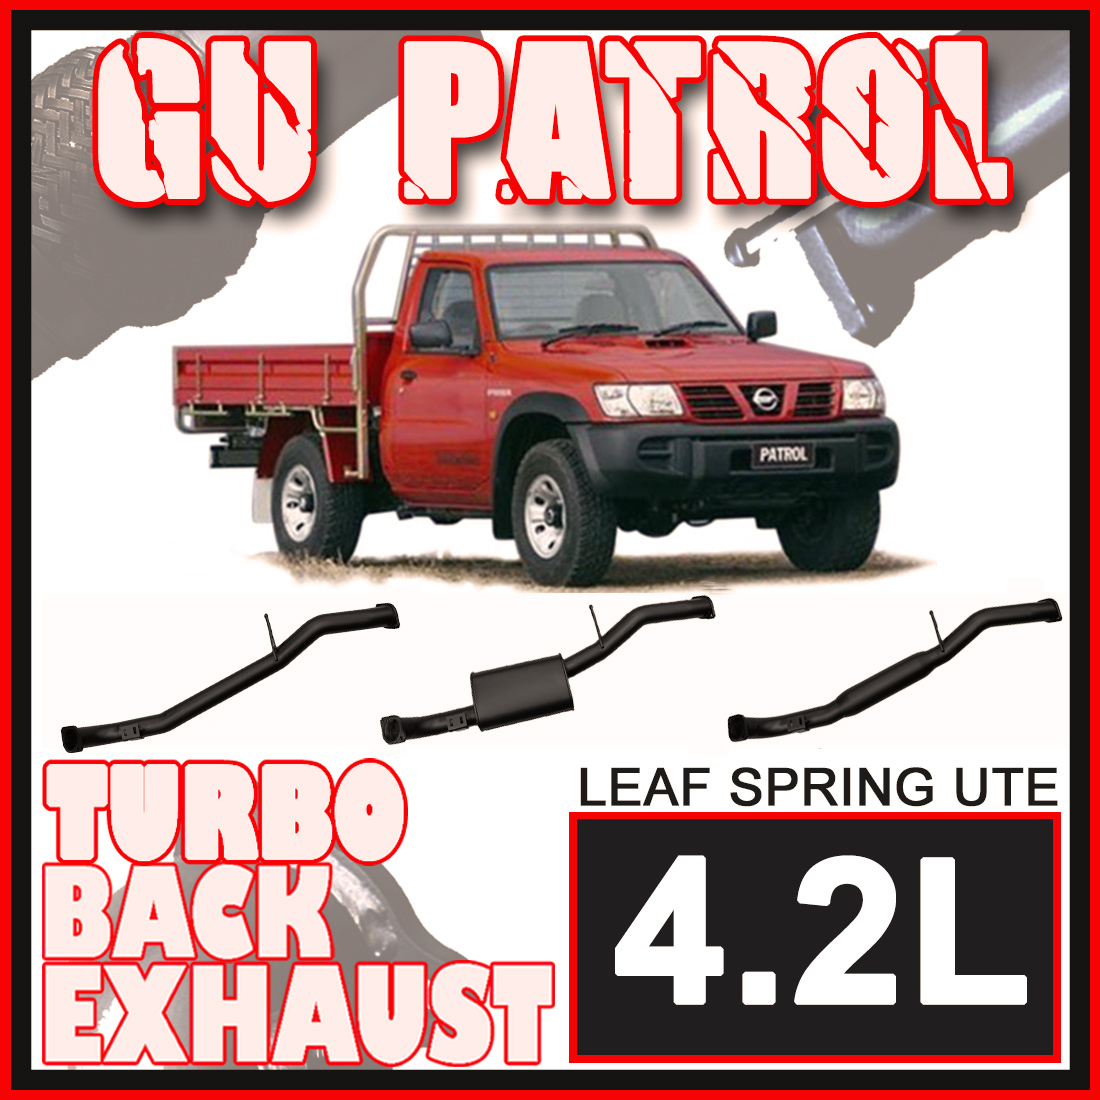 Nissan Patrol GU Leaf Spring Ute 4.2L Ignite Exhaust image